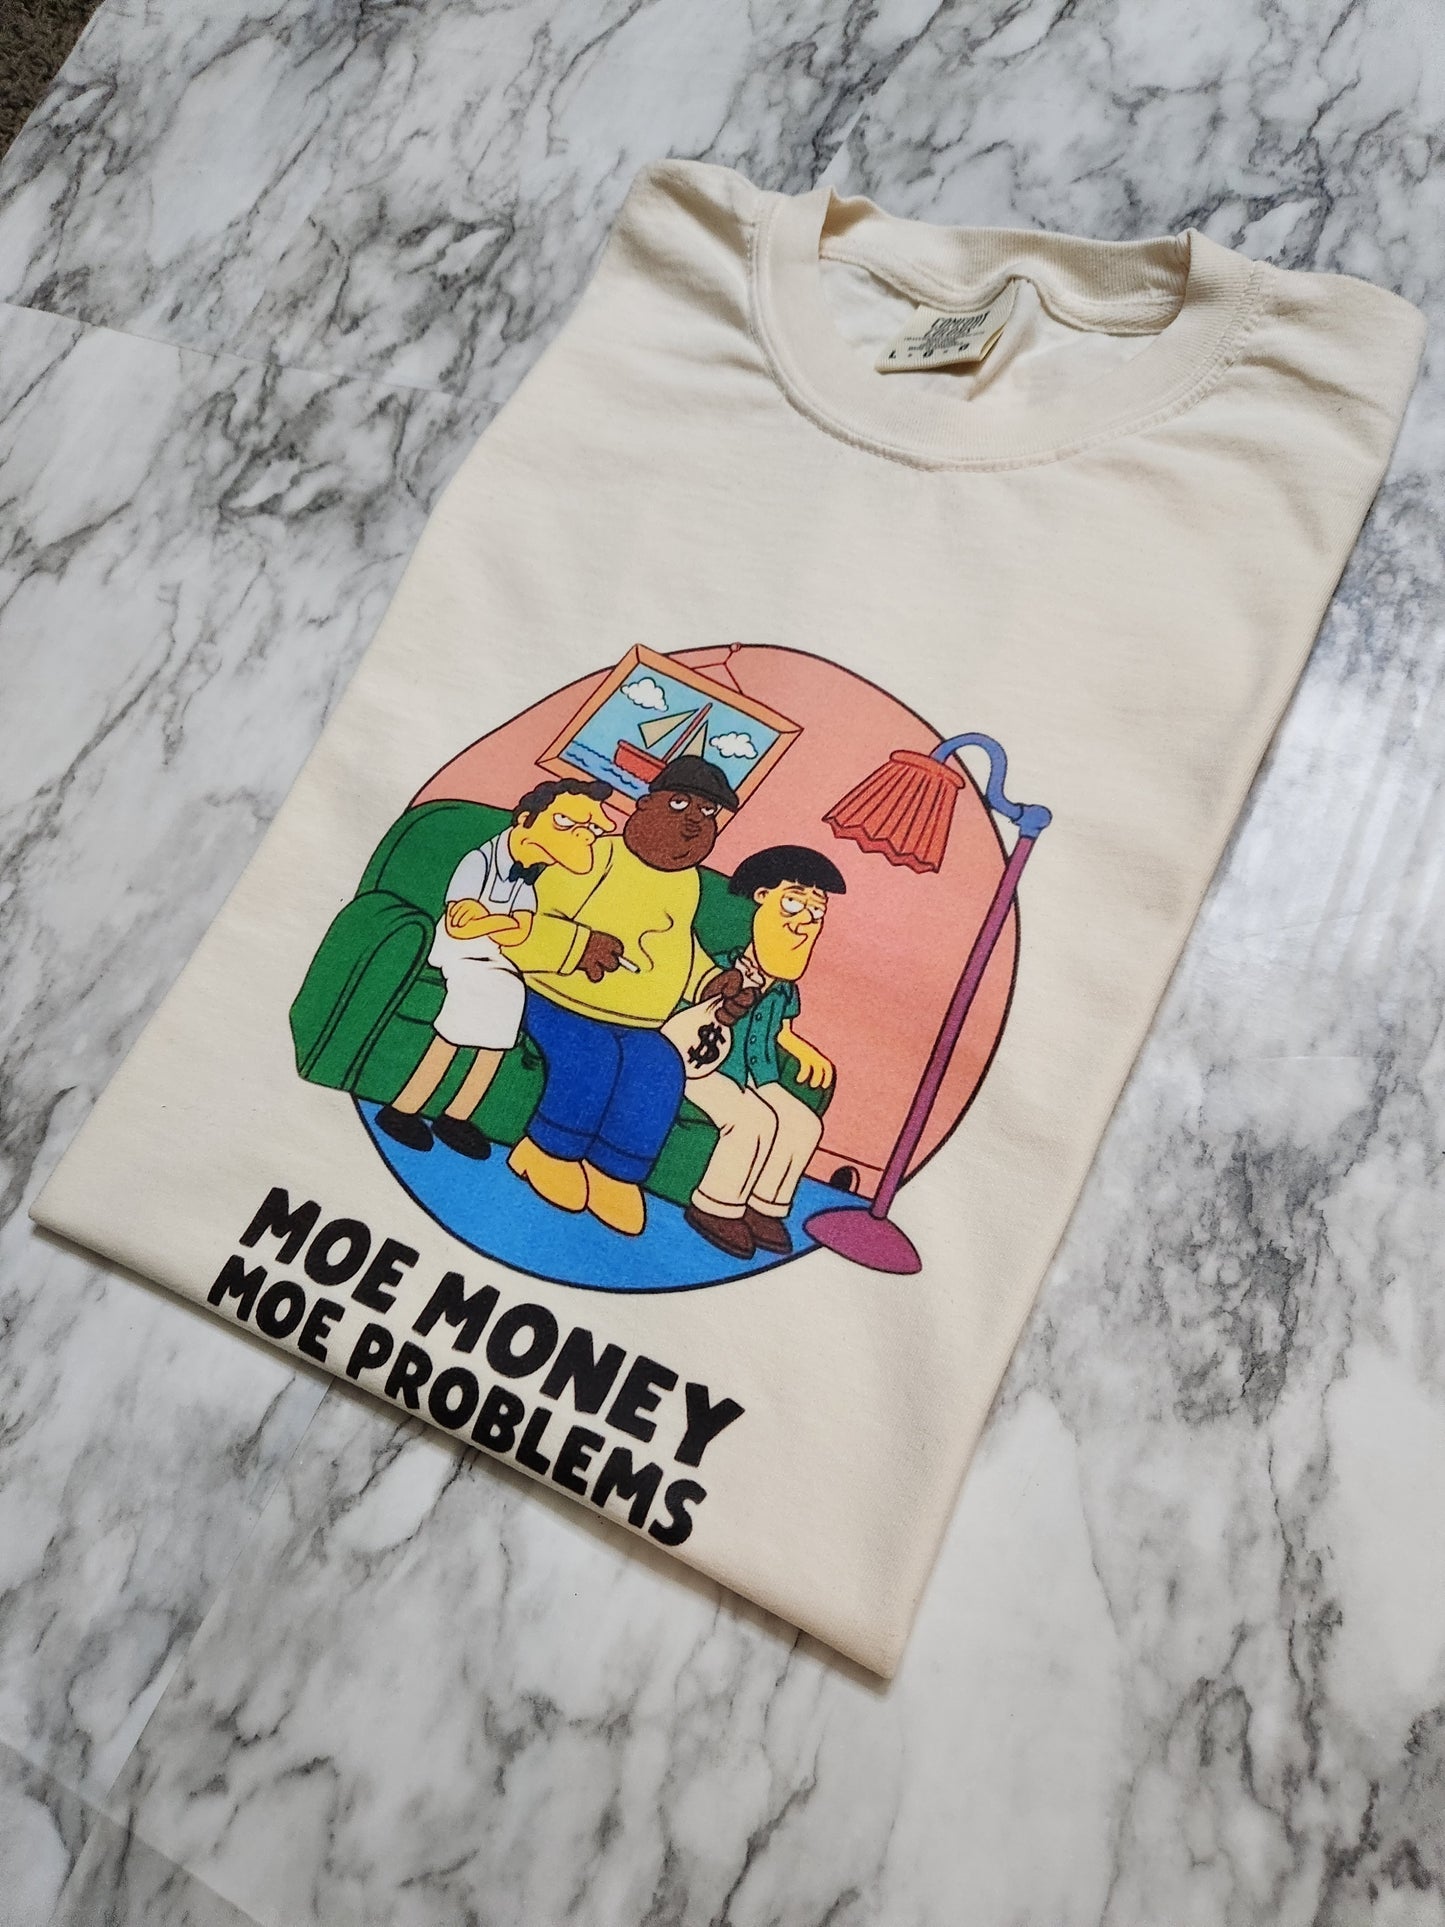 Moe' Money T-Shirt (OG)